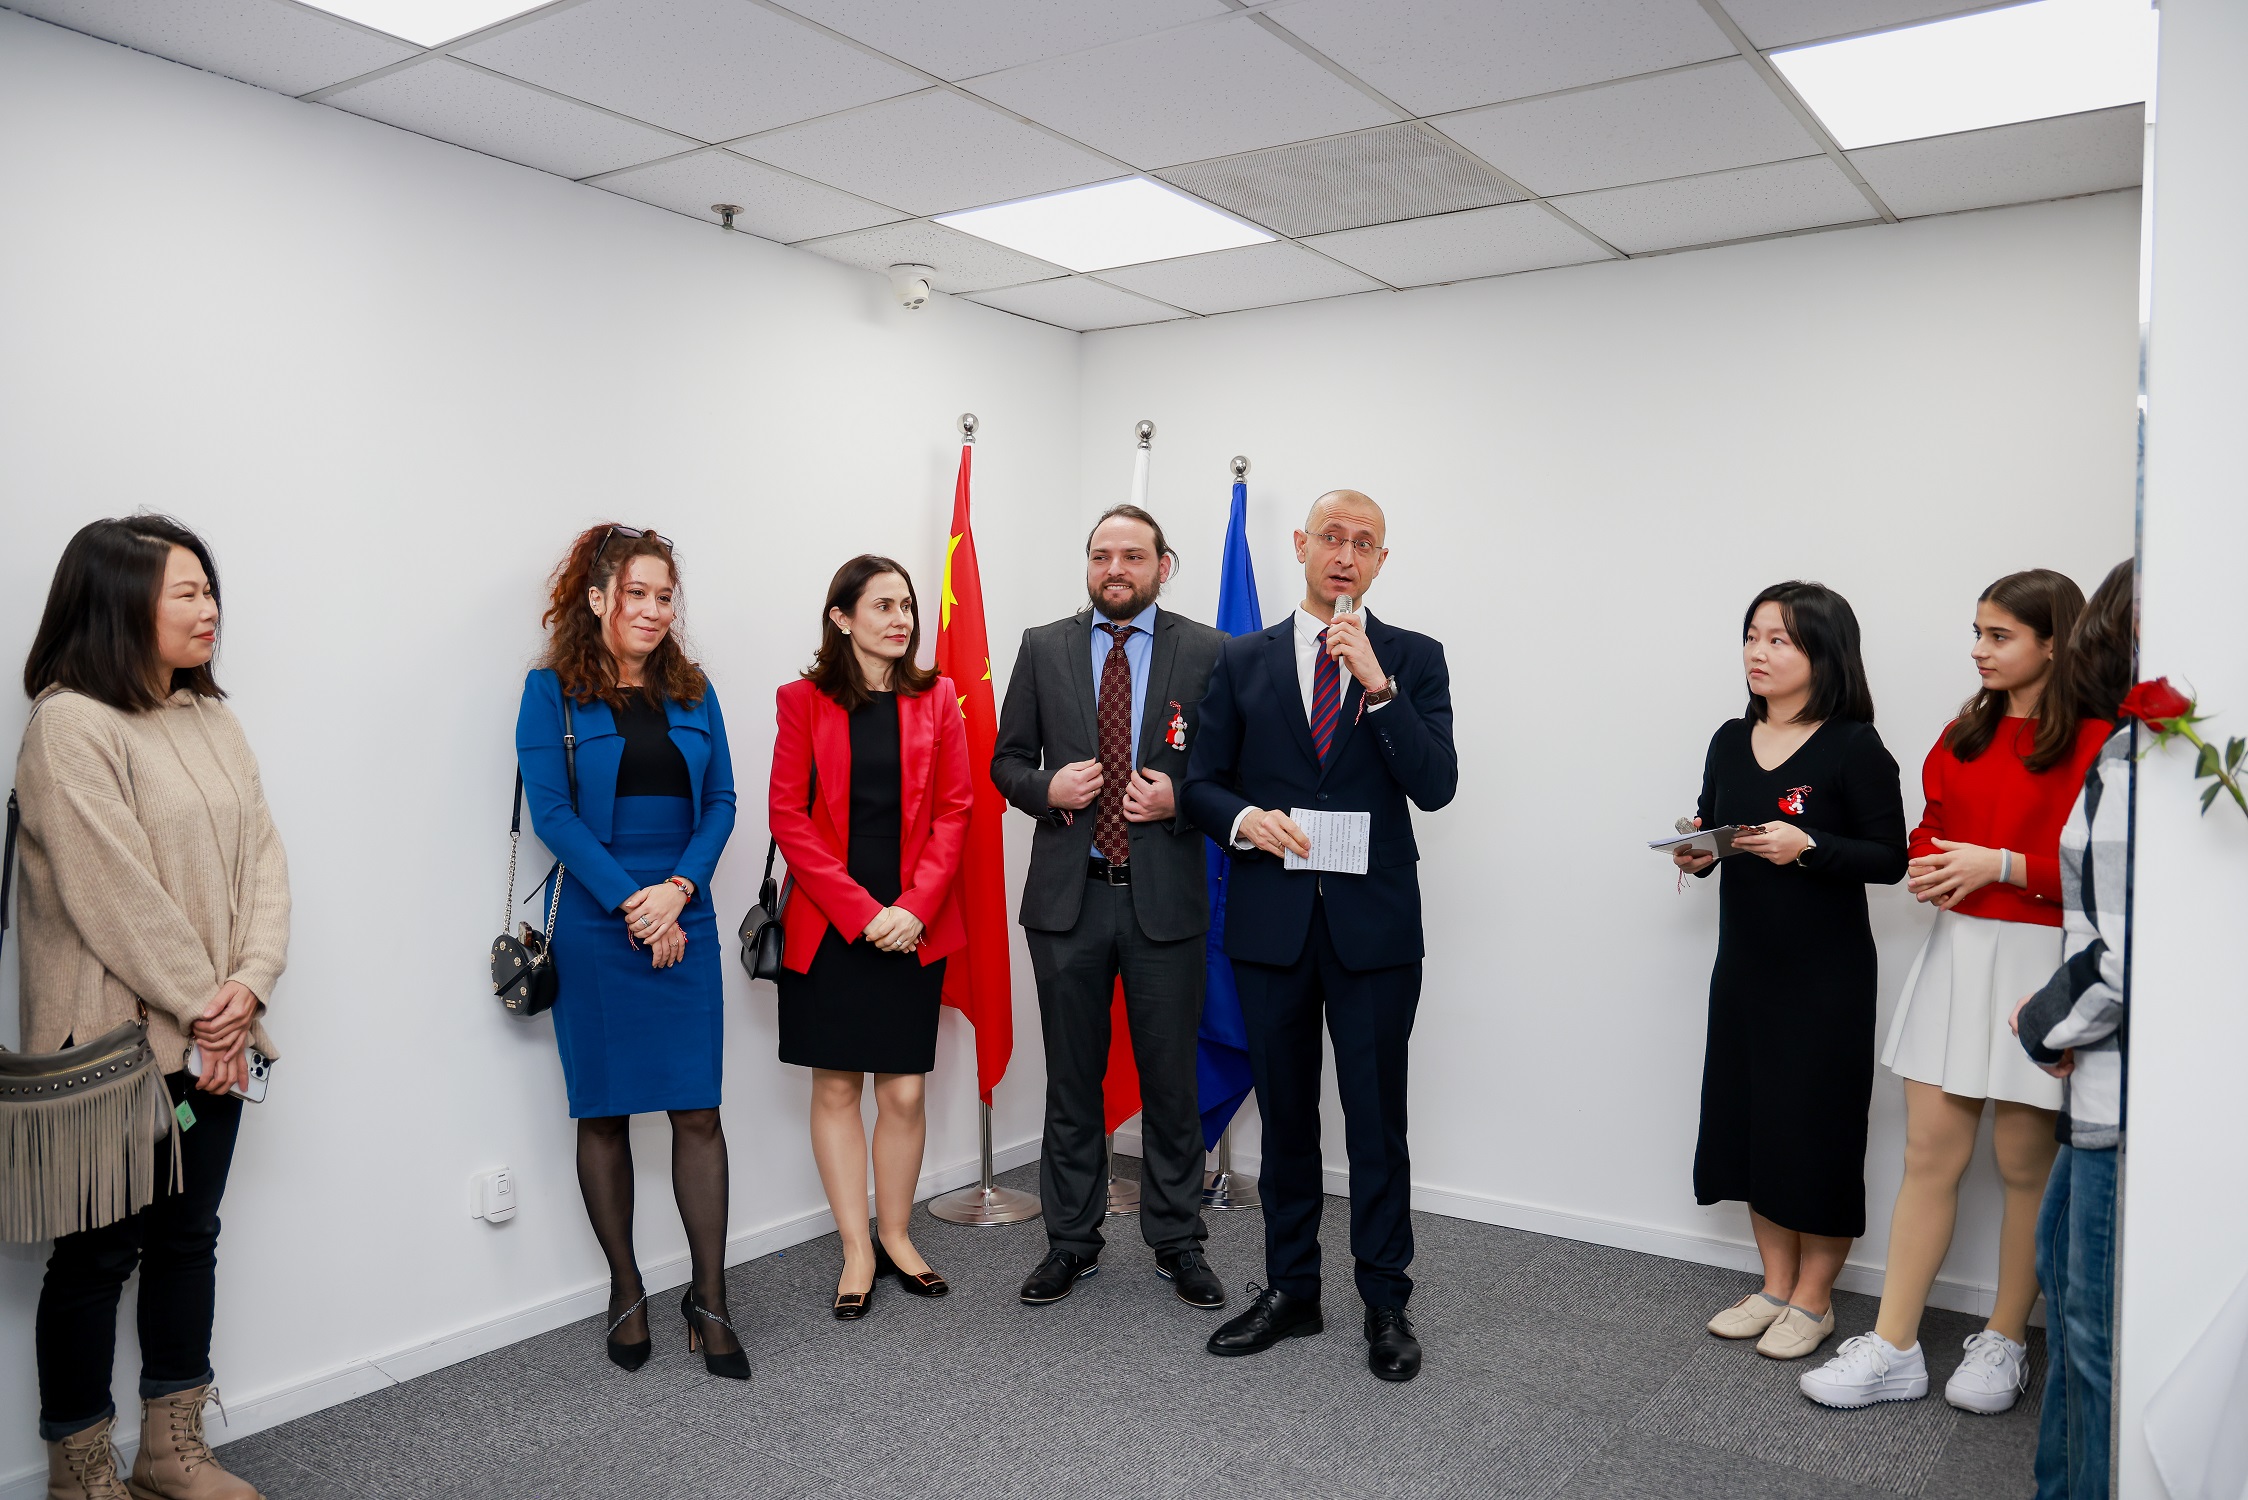 Българската общност в консулския окръг на генералното консулство в Шанхай отбеляза националния празник на България